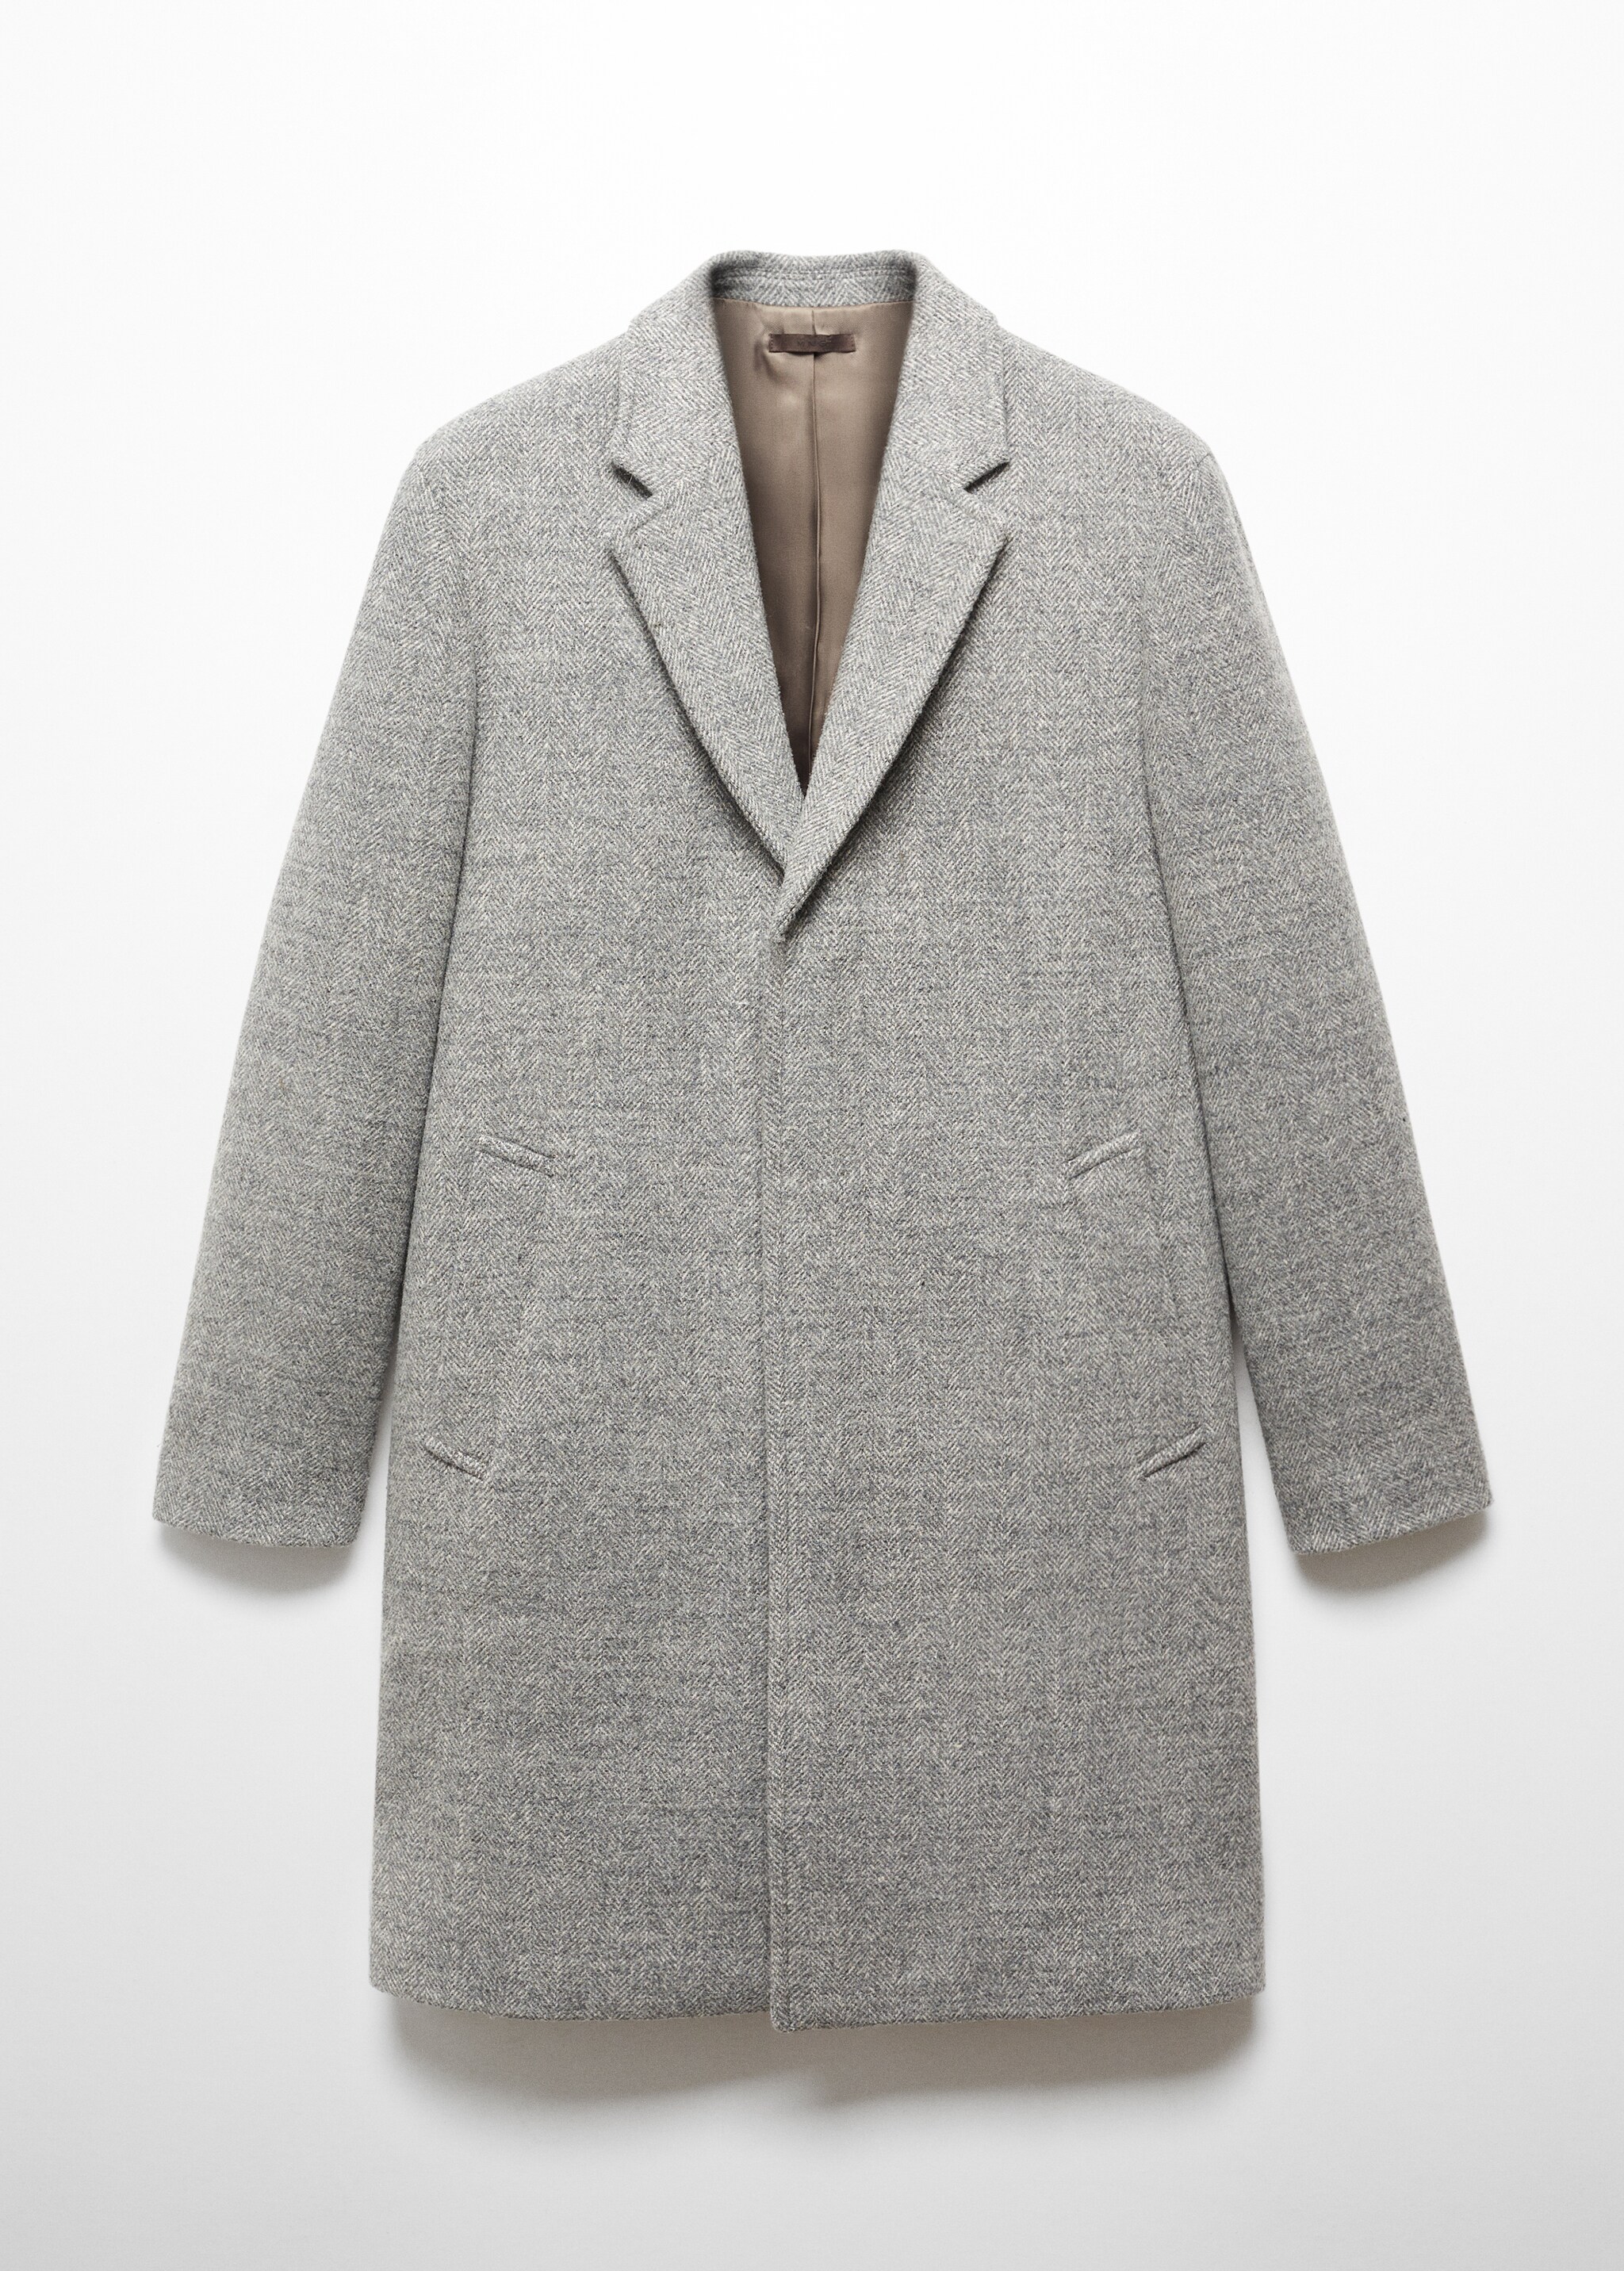 Cappotto lana spigato - Articolo senza modello